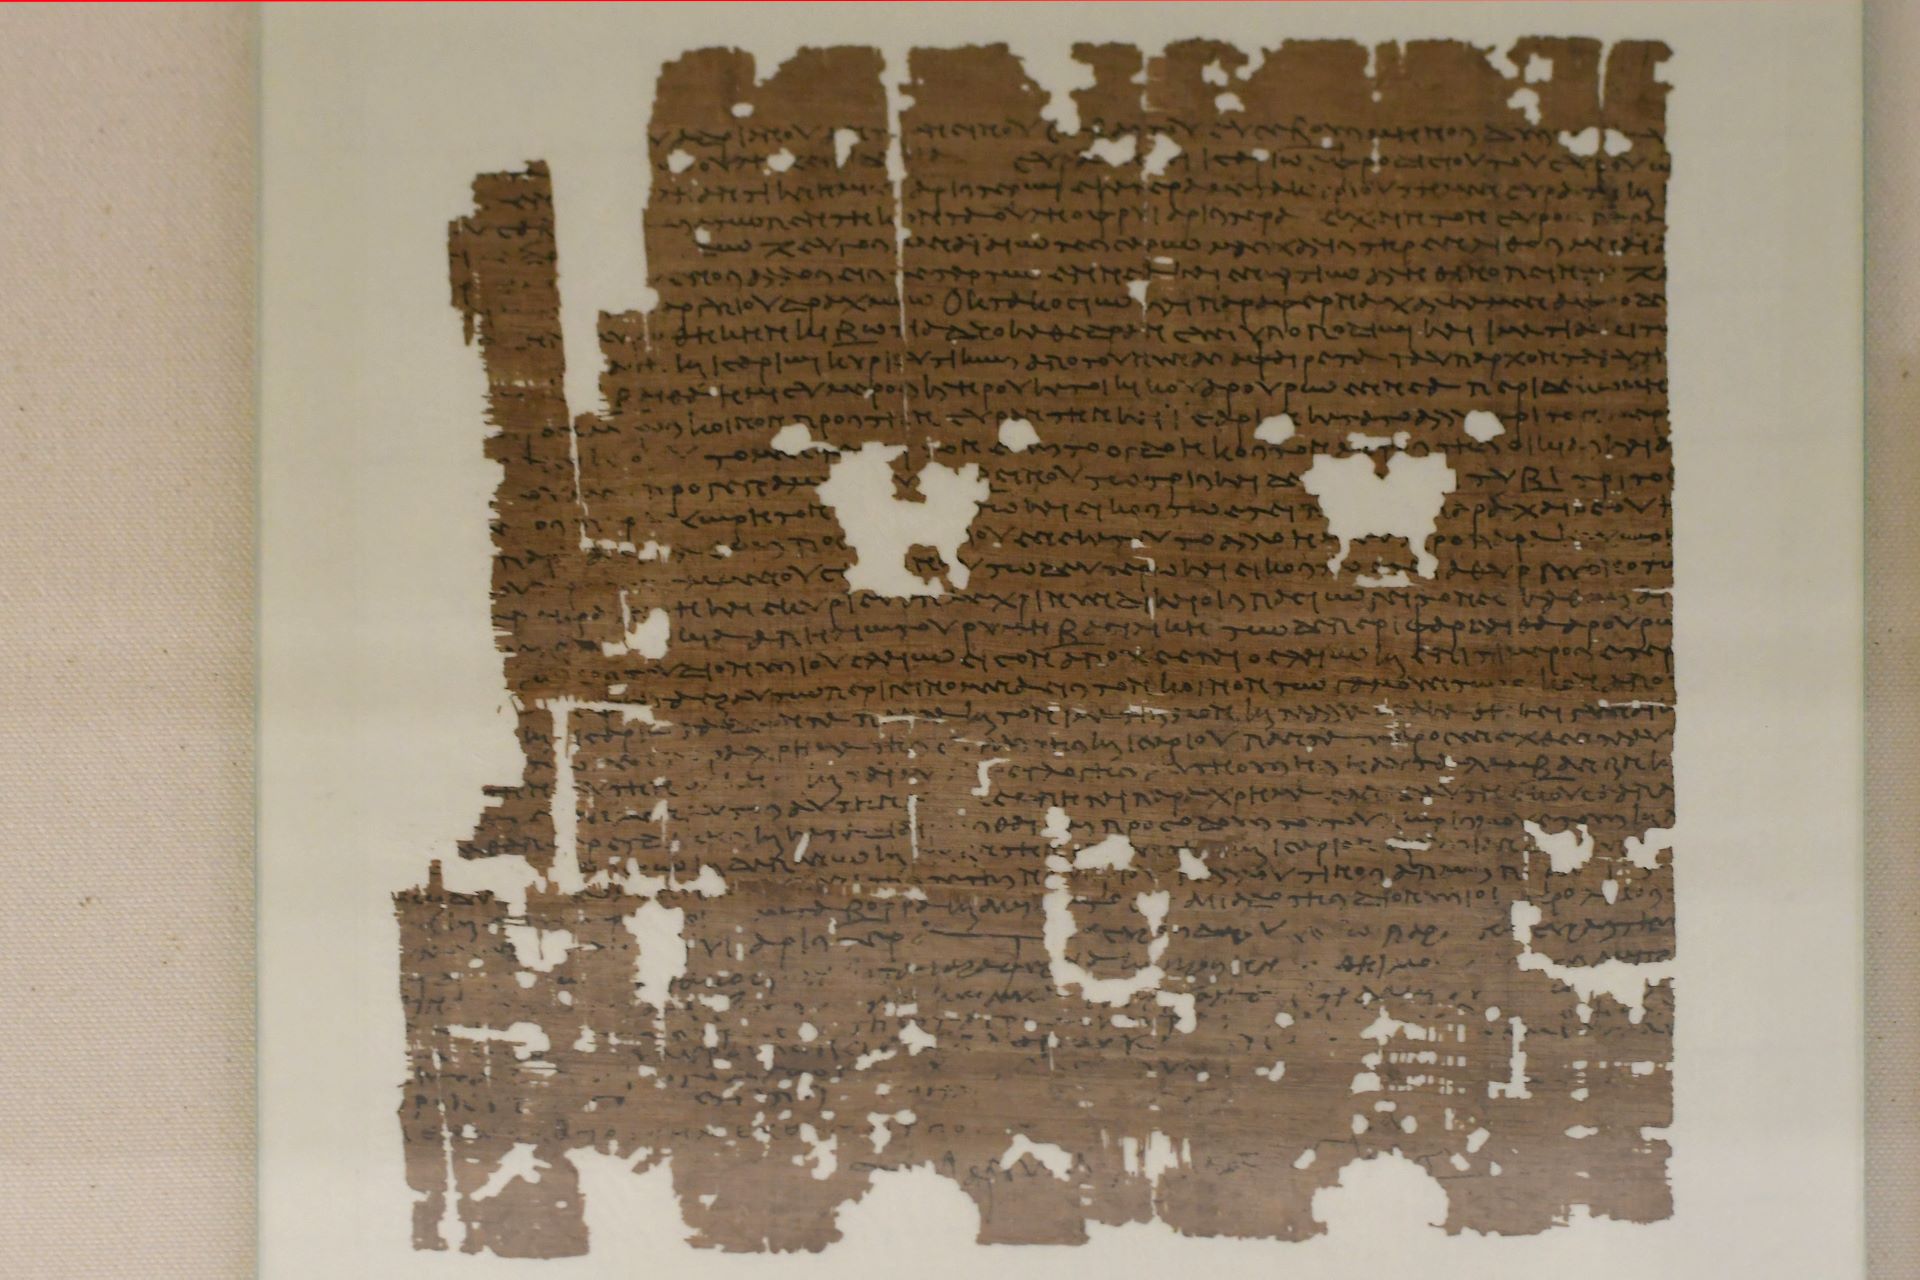 blog:2018-11-17-texte-aus-ferner-zeit:2018-11-17-wien-papyrusmuseum-106b.jpg